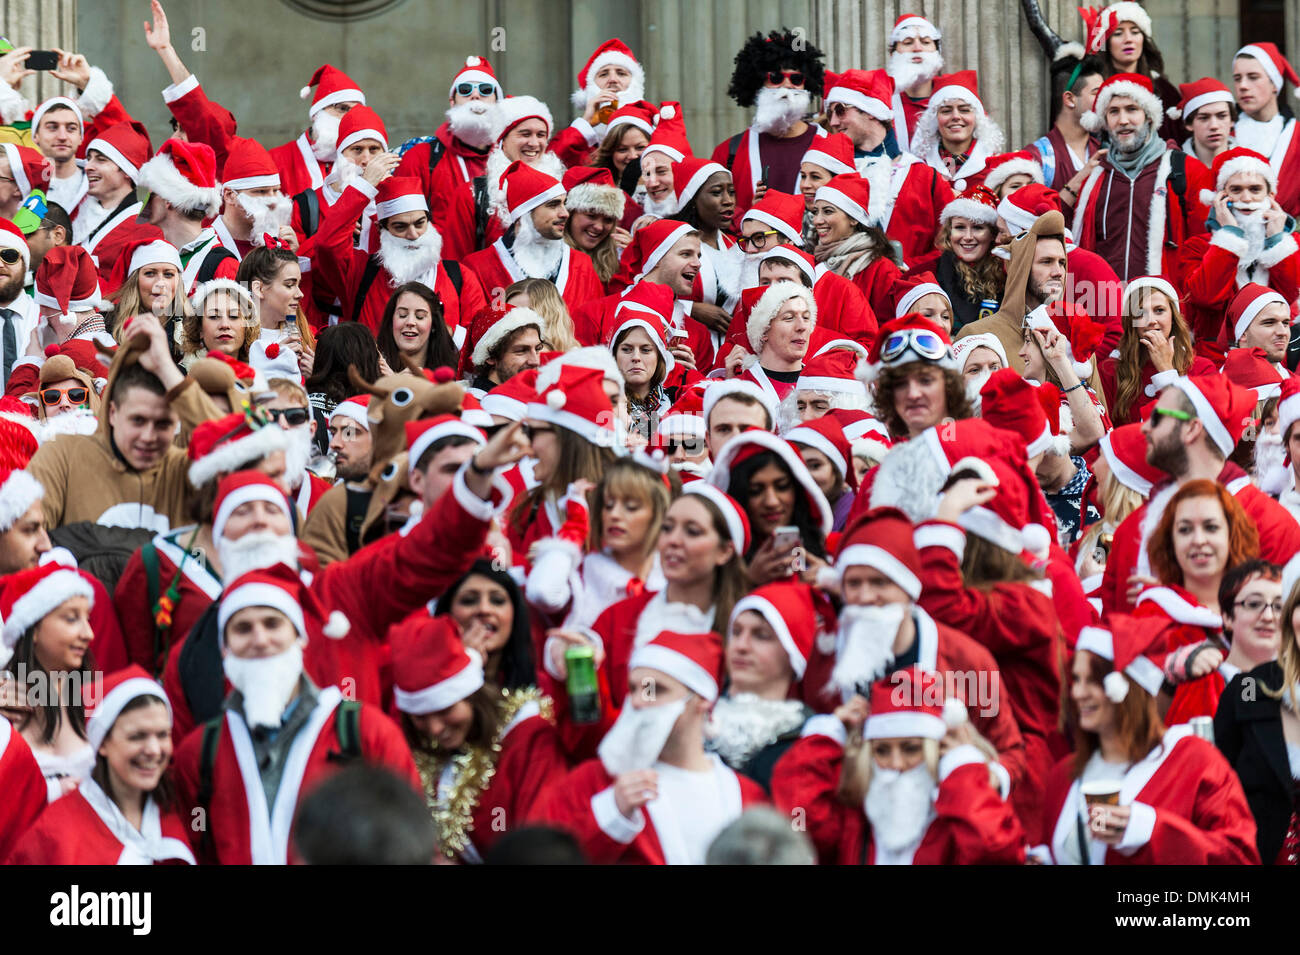 Londres, Royaume-Uni. 14 Décembre, 2013. Des centaines de Santas recueillir sur les marches de la Cathédrale St Paul avant leur arrêt mars pour rencontrer des groupes d'autres Santas pour célébrer le Santacon annuel. Photographe : Gordon 1928/Alamy Live News Banque D'Images